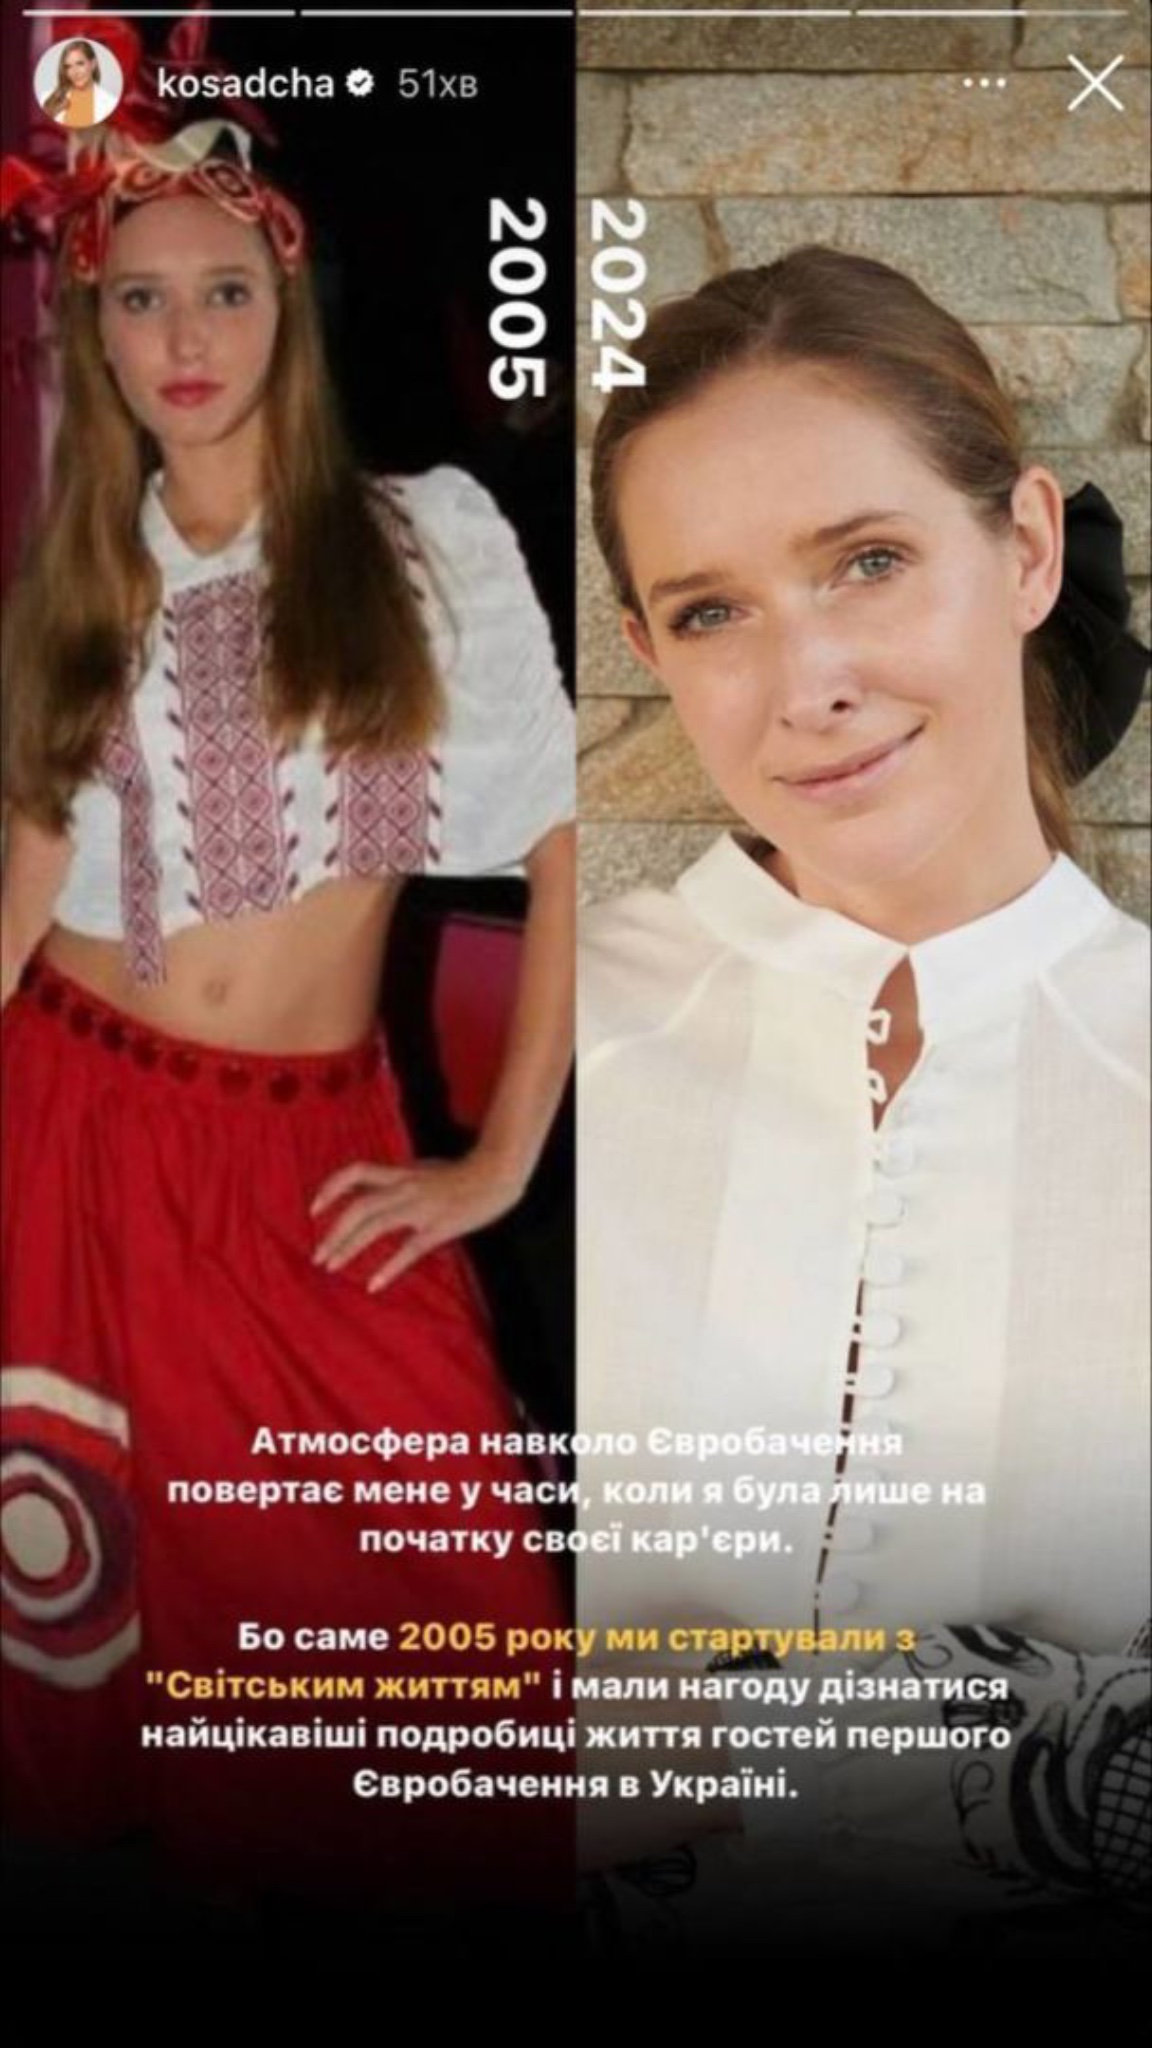 Катерина Осадча показала, як виглядала до своєї популярності. Фото з Instagram @kosadcha